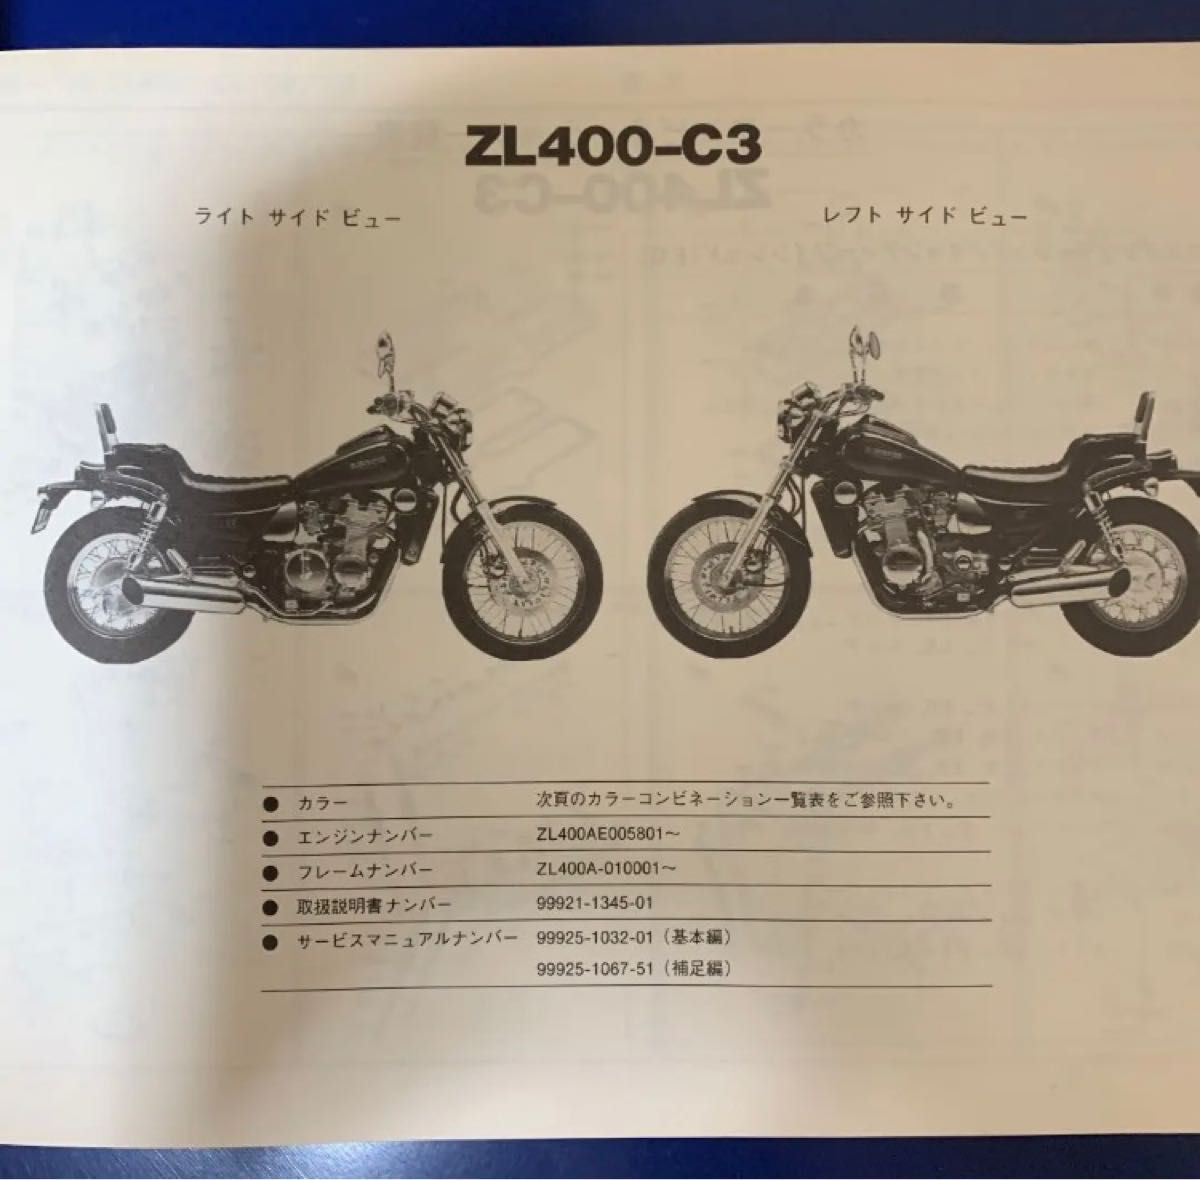 Kawasaki ZL400-C1/C2/C3(エリミネーター400LX) パーツカタログ